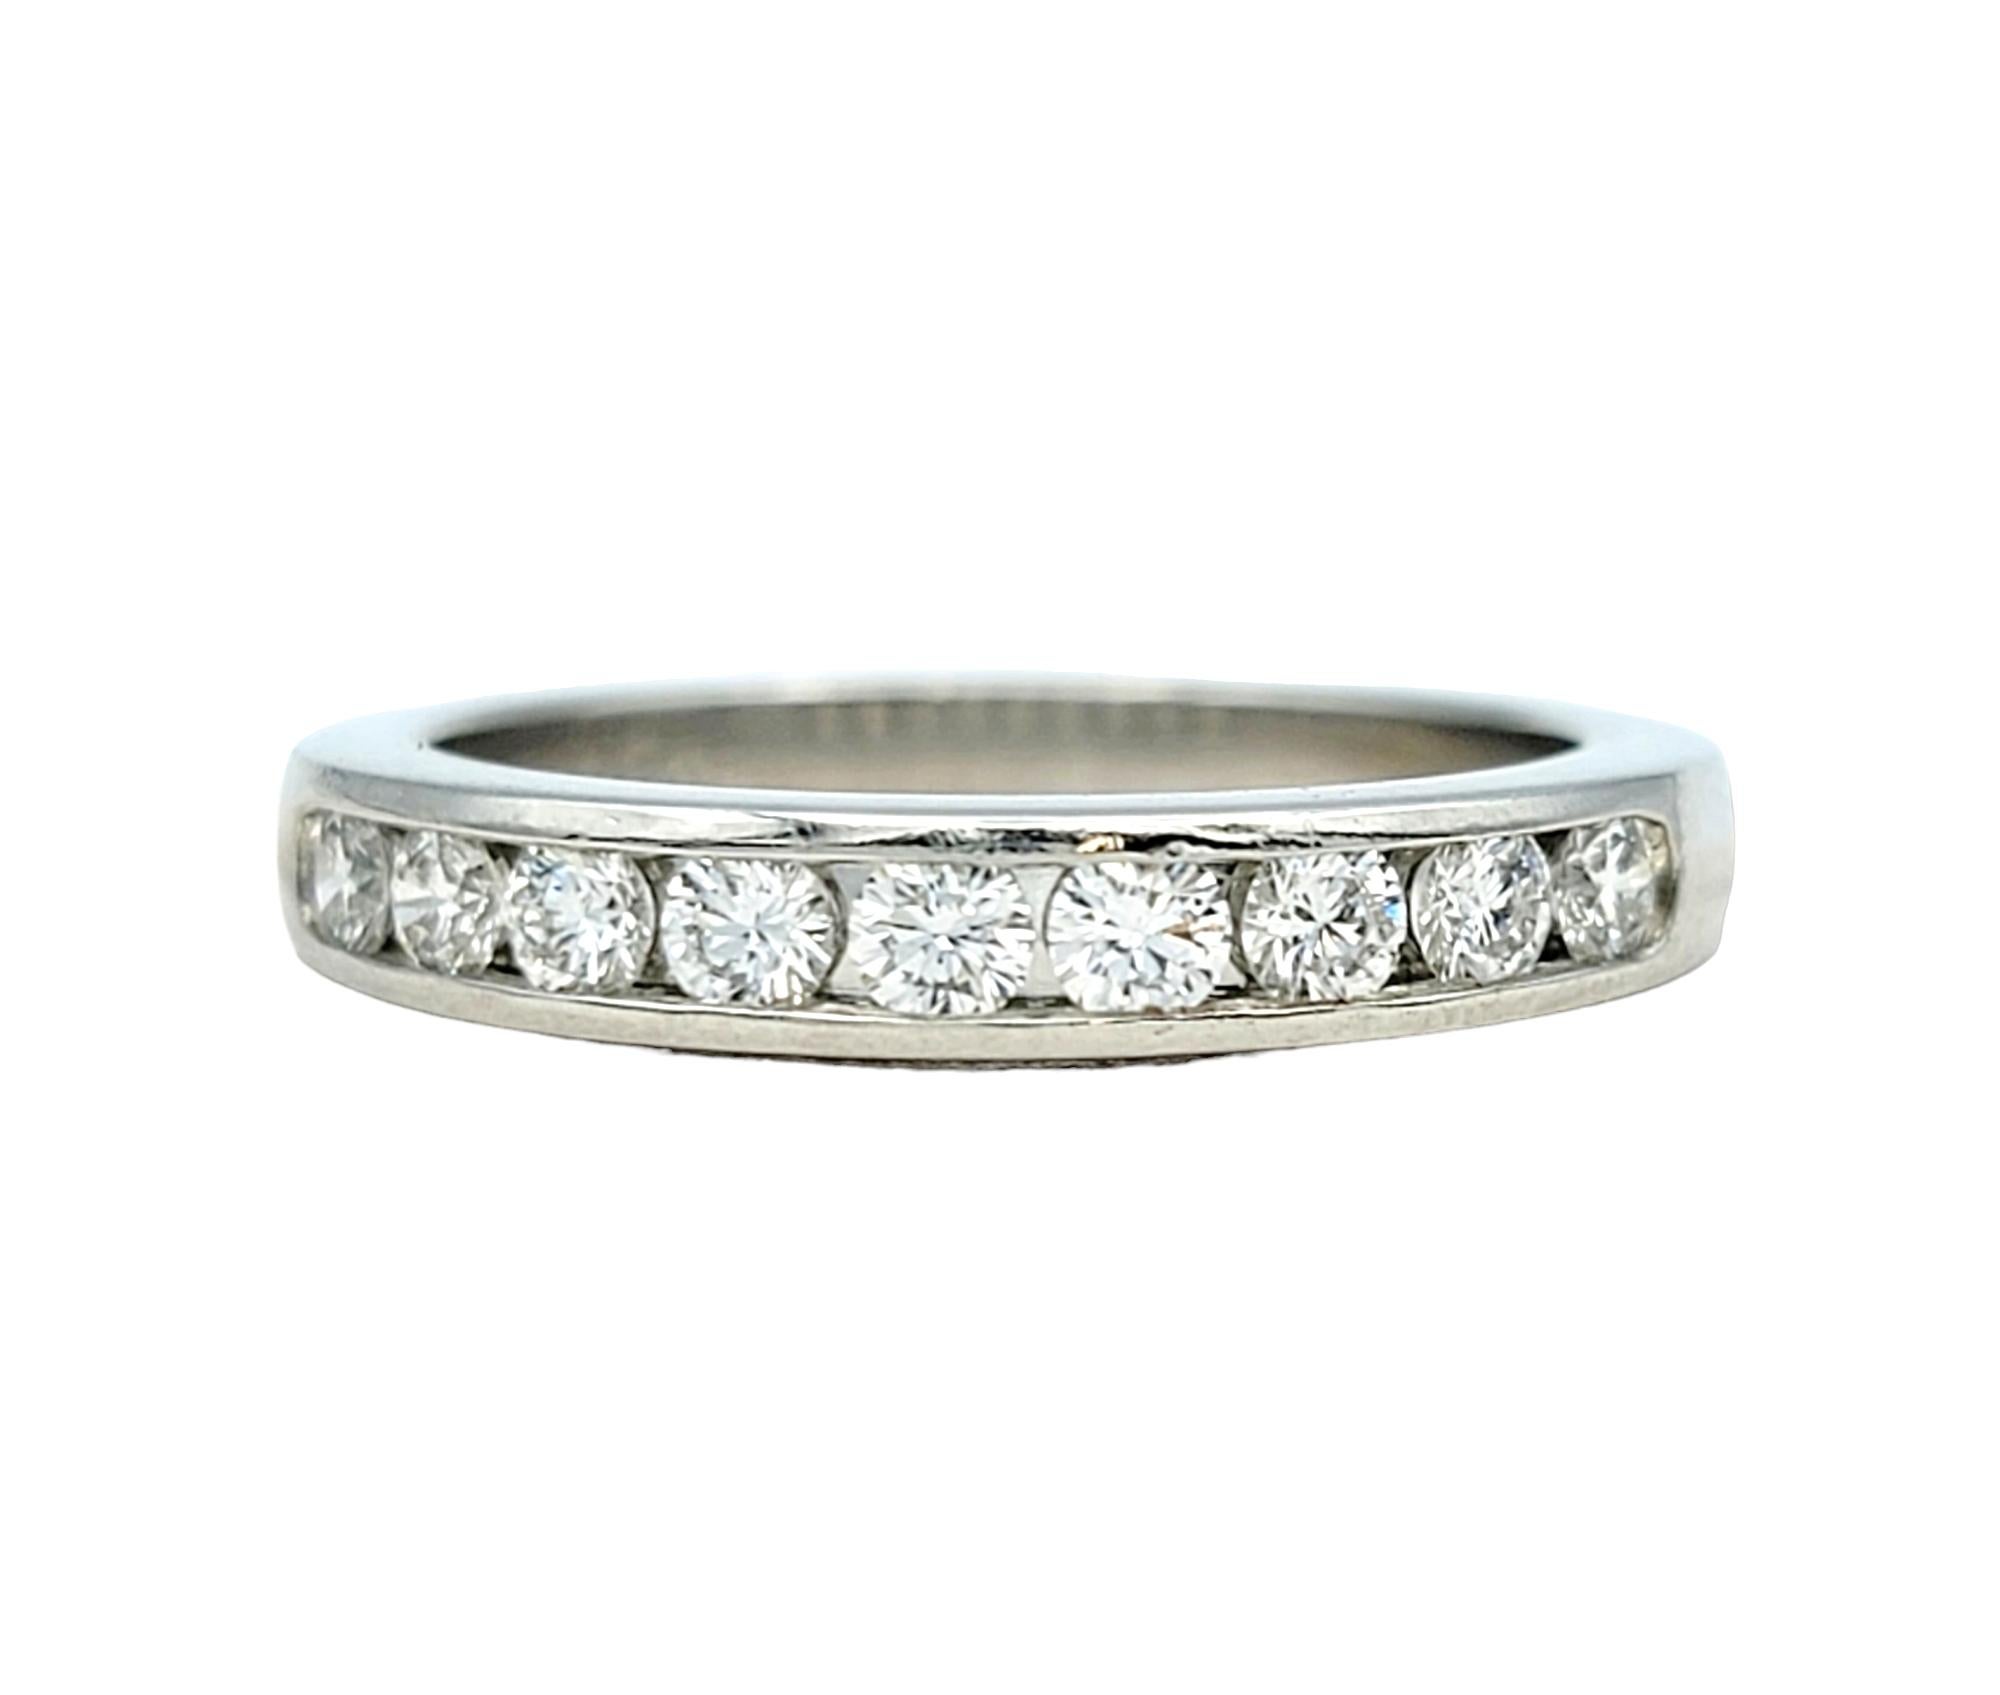 Ringgröße: 3.75

Dieser exquisite Ehering von Tiffany & Co. ist ein Symbol für ewige Liebe und Hingabe. Gefertigt aus glänzendem Platin, strahlt er zeitlose Eleganz und Beständigkeit aus, ein passendes Symbol für eine dauerhafte Ehe.

Der Ring